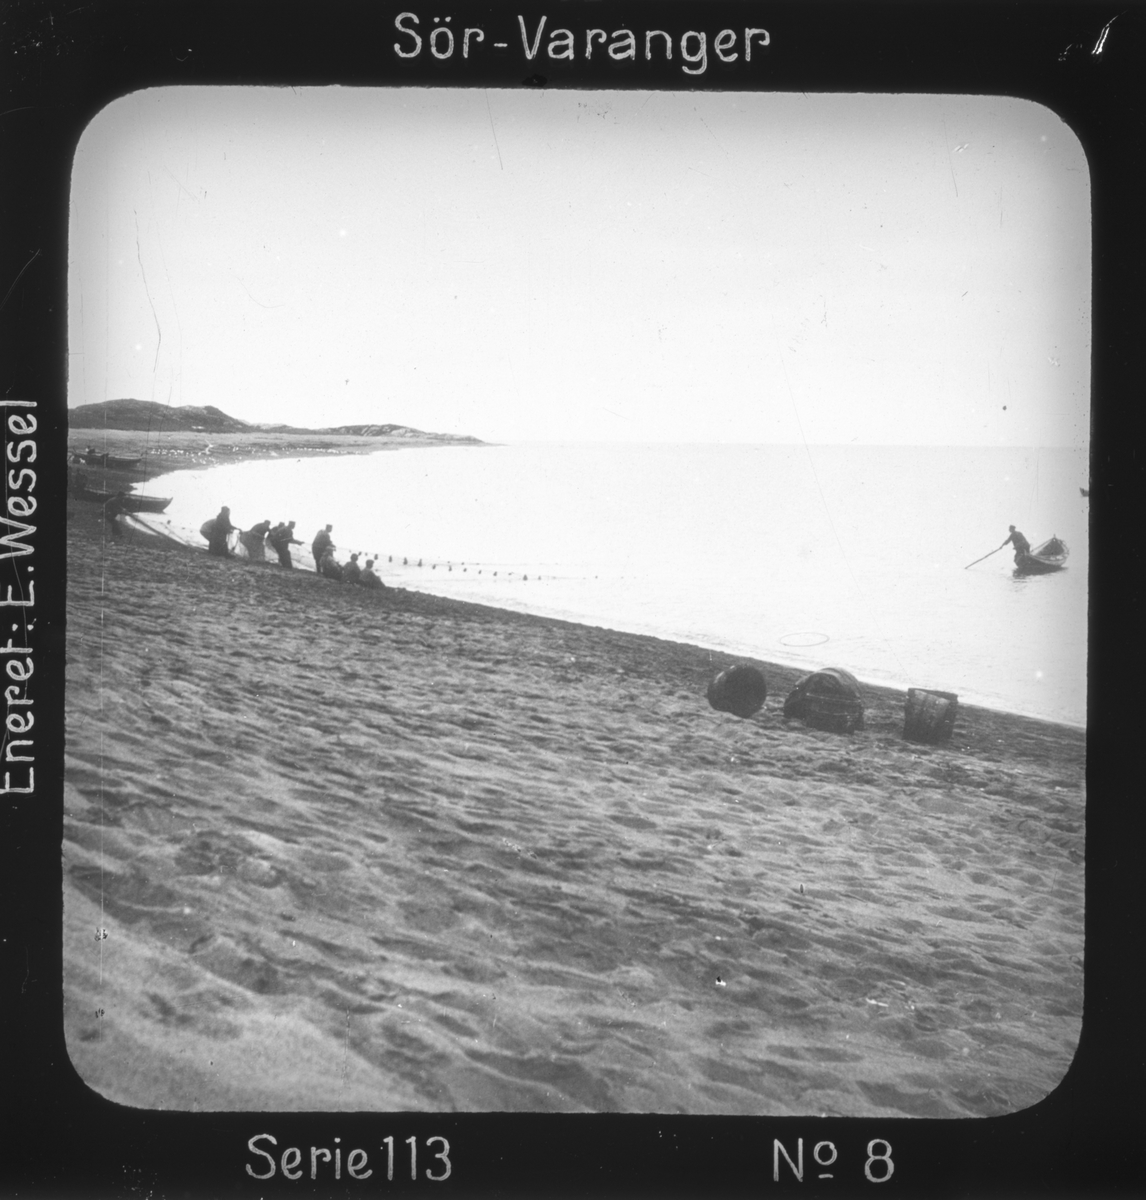 Notfiske utenfor Grense Jakobselvs munning, Sør-Varanger, Finnmark. 
Motivet har nr.8 i lysbildeforedraget kalt  "I lappernes land - Sør-Varanger", utgitt i Nerliens Lysbilledserier, serie nr 113. 